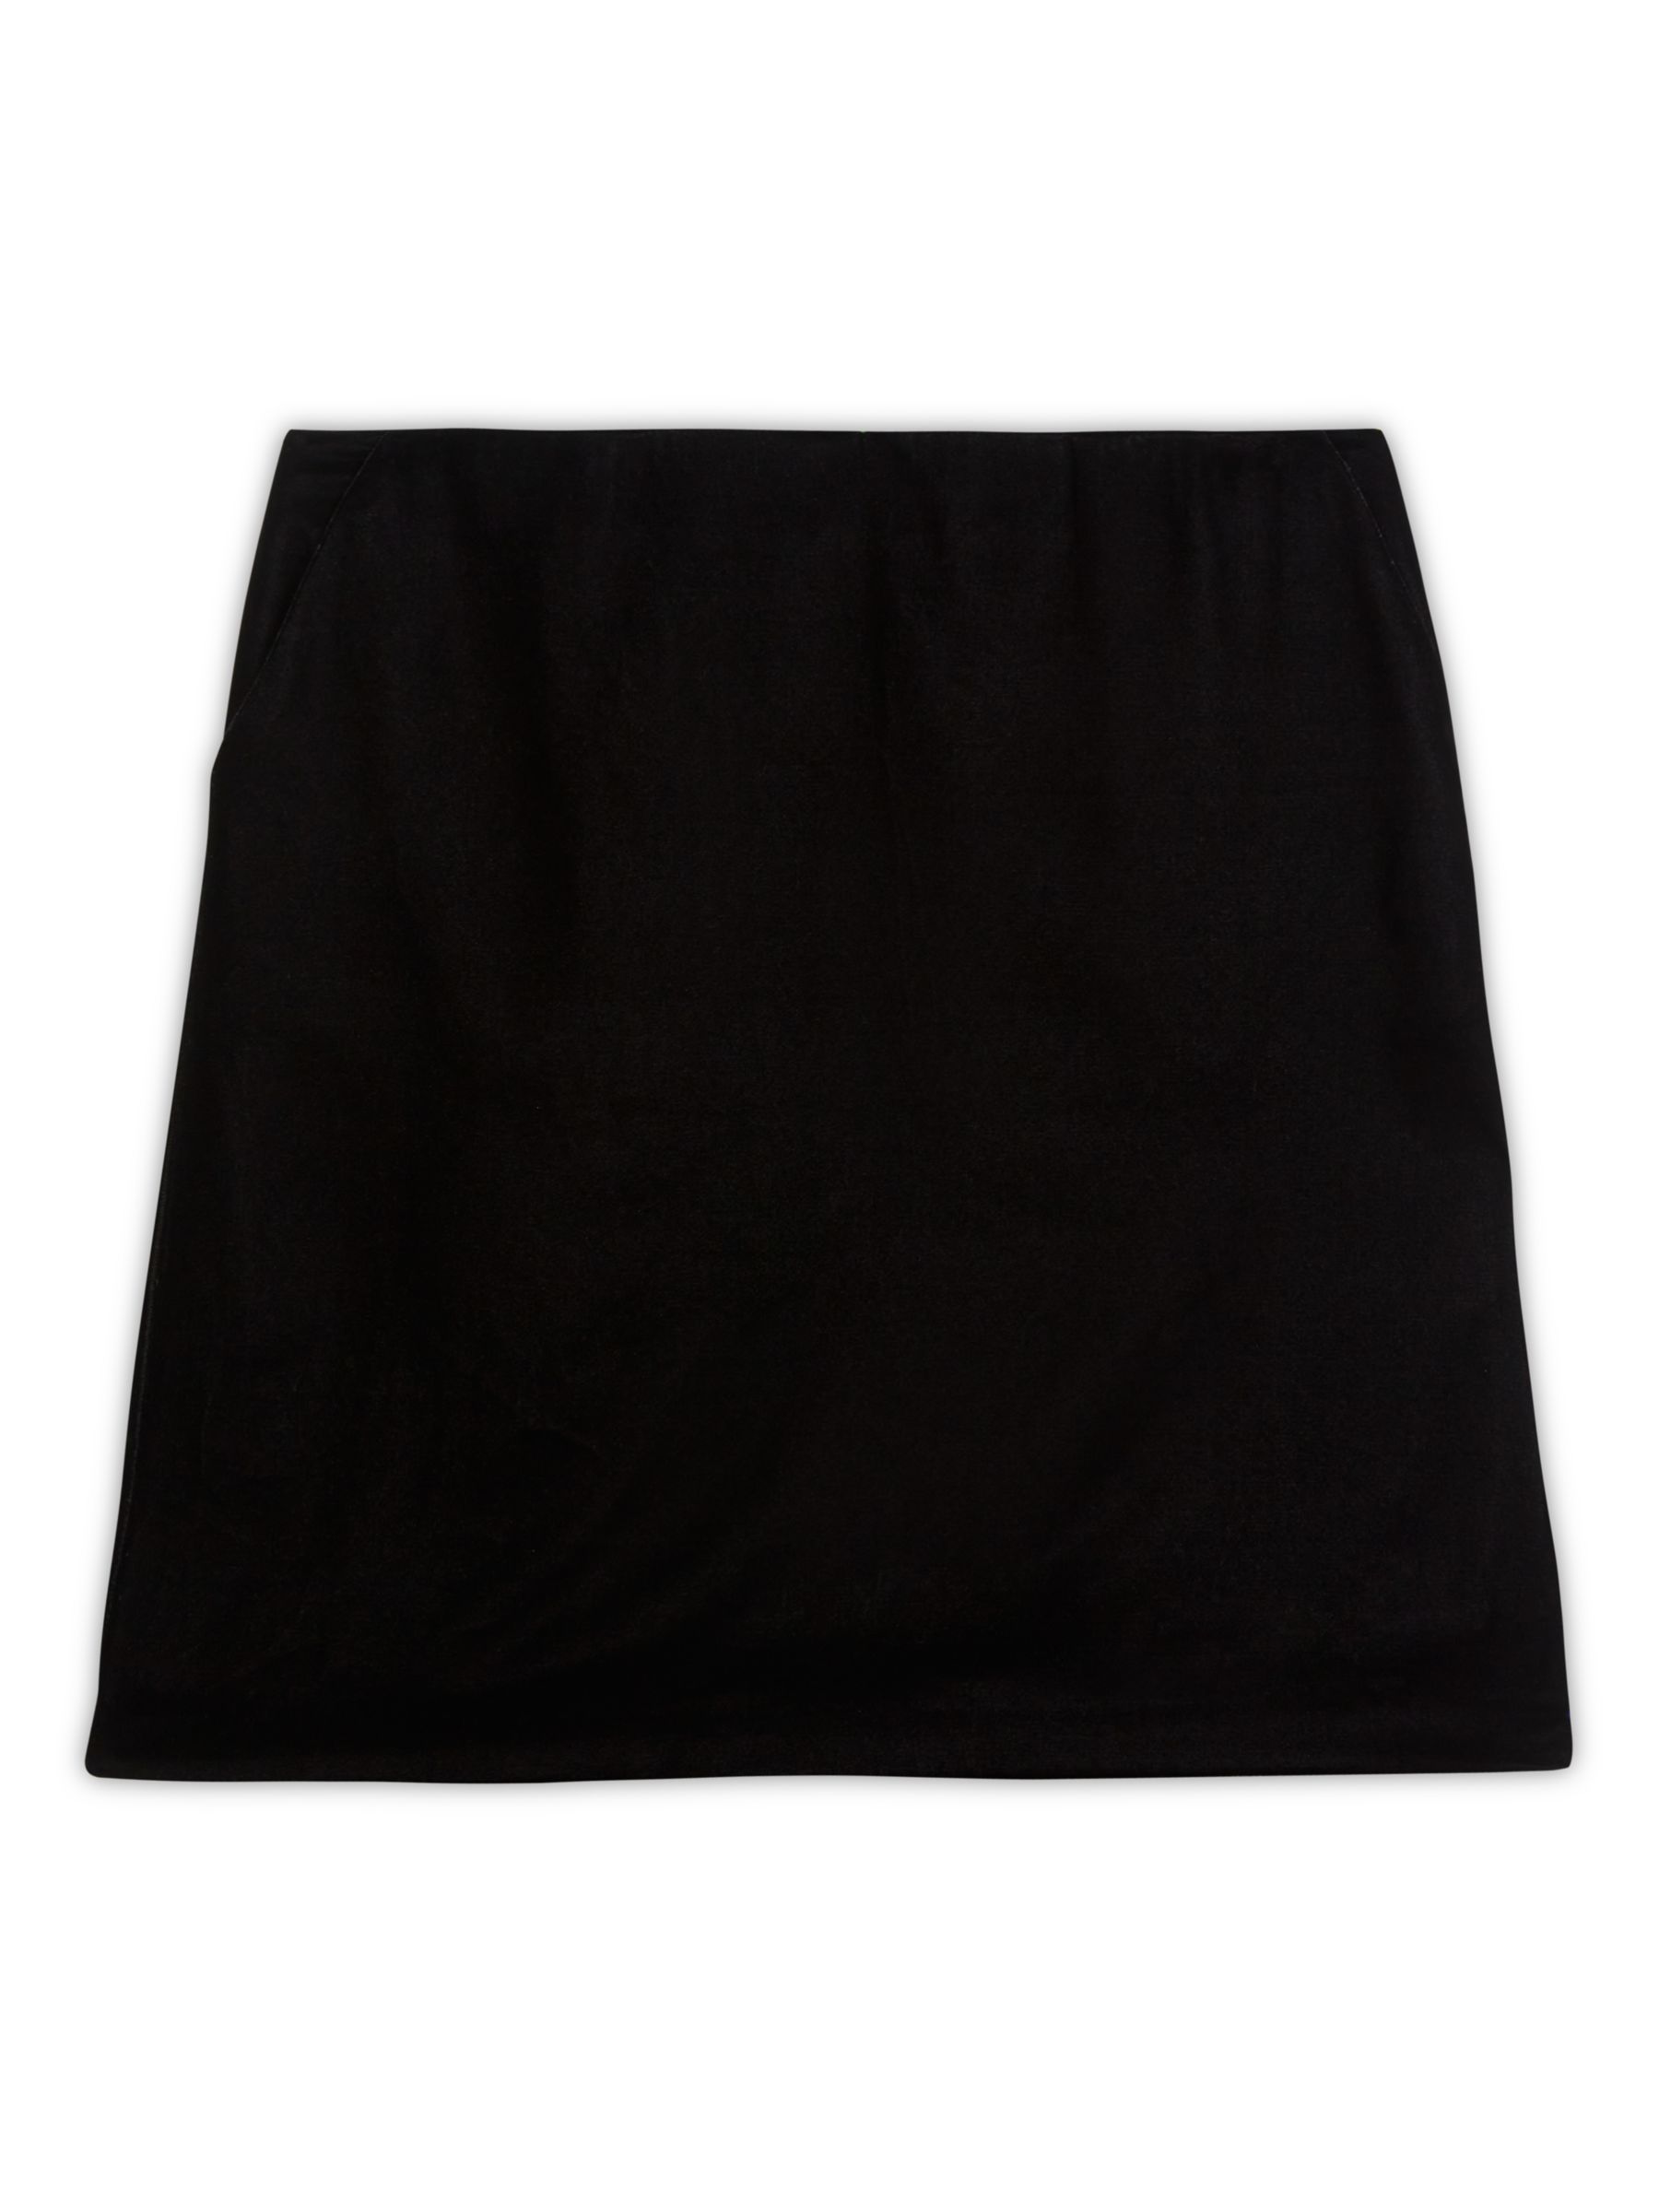 Albaray Velvet Mini Skirt, Black, 8